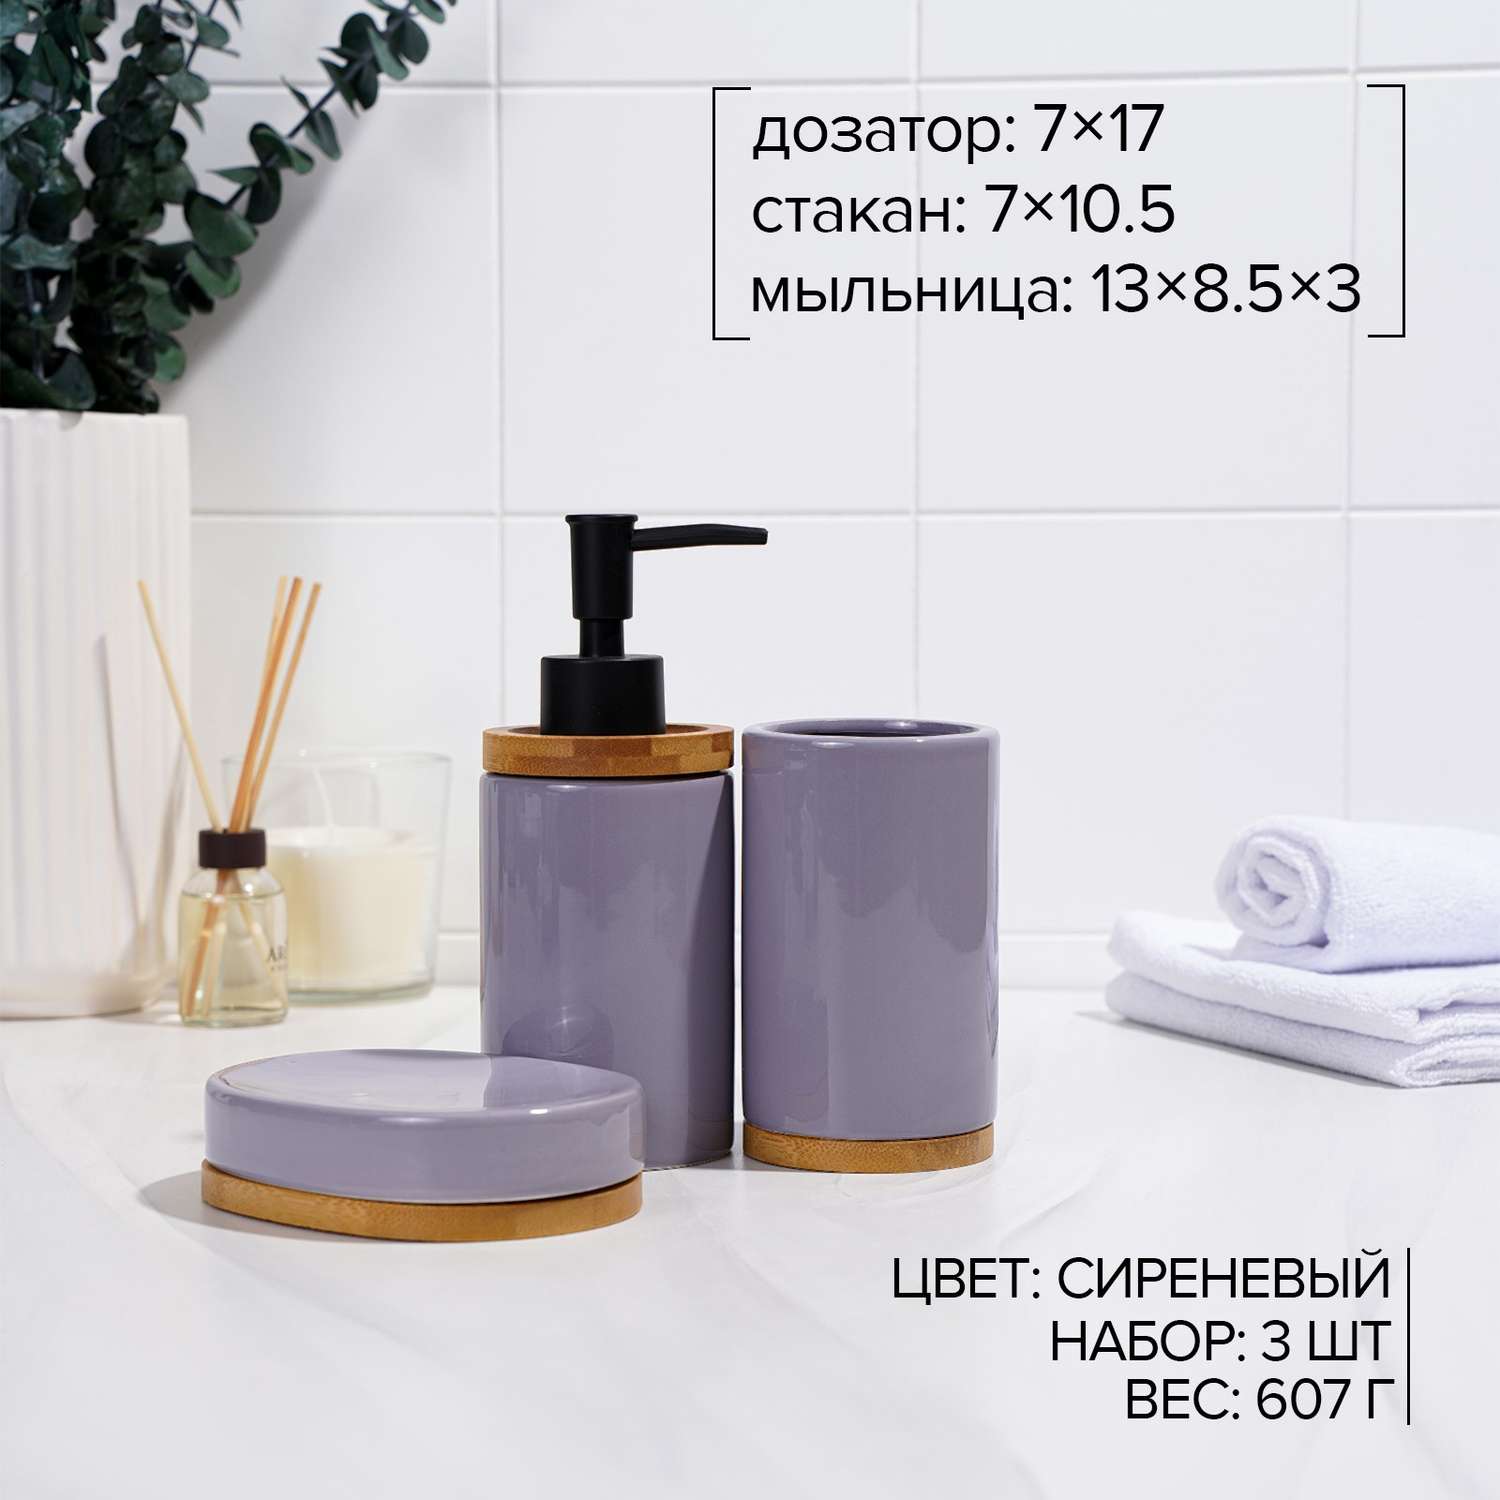 Набор SAVANNA аксессуаров для ванной комнаты «Джуно» 3 предмета - фото 2